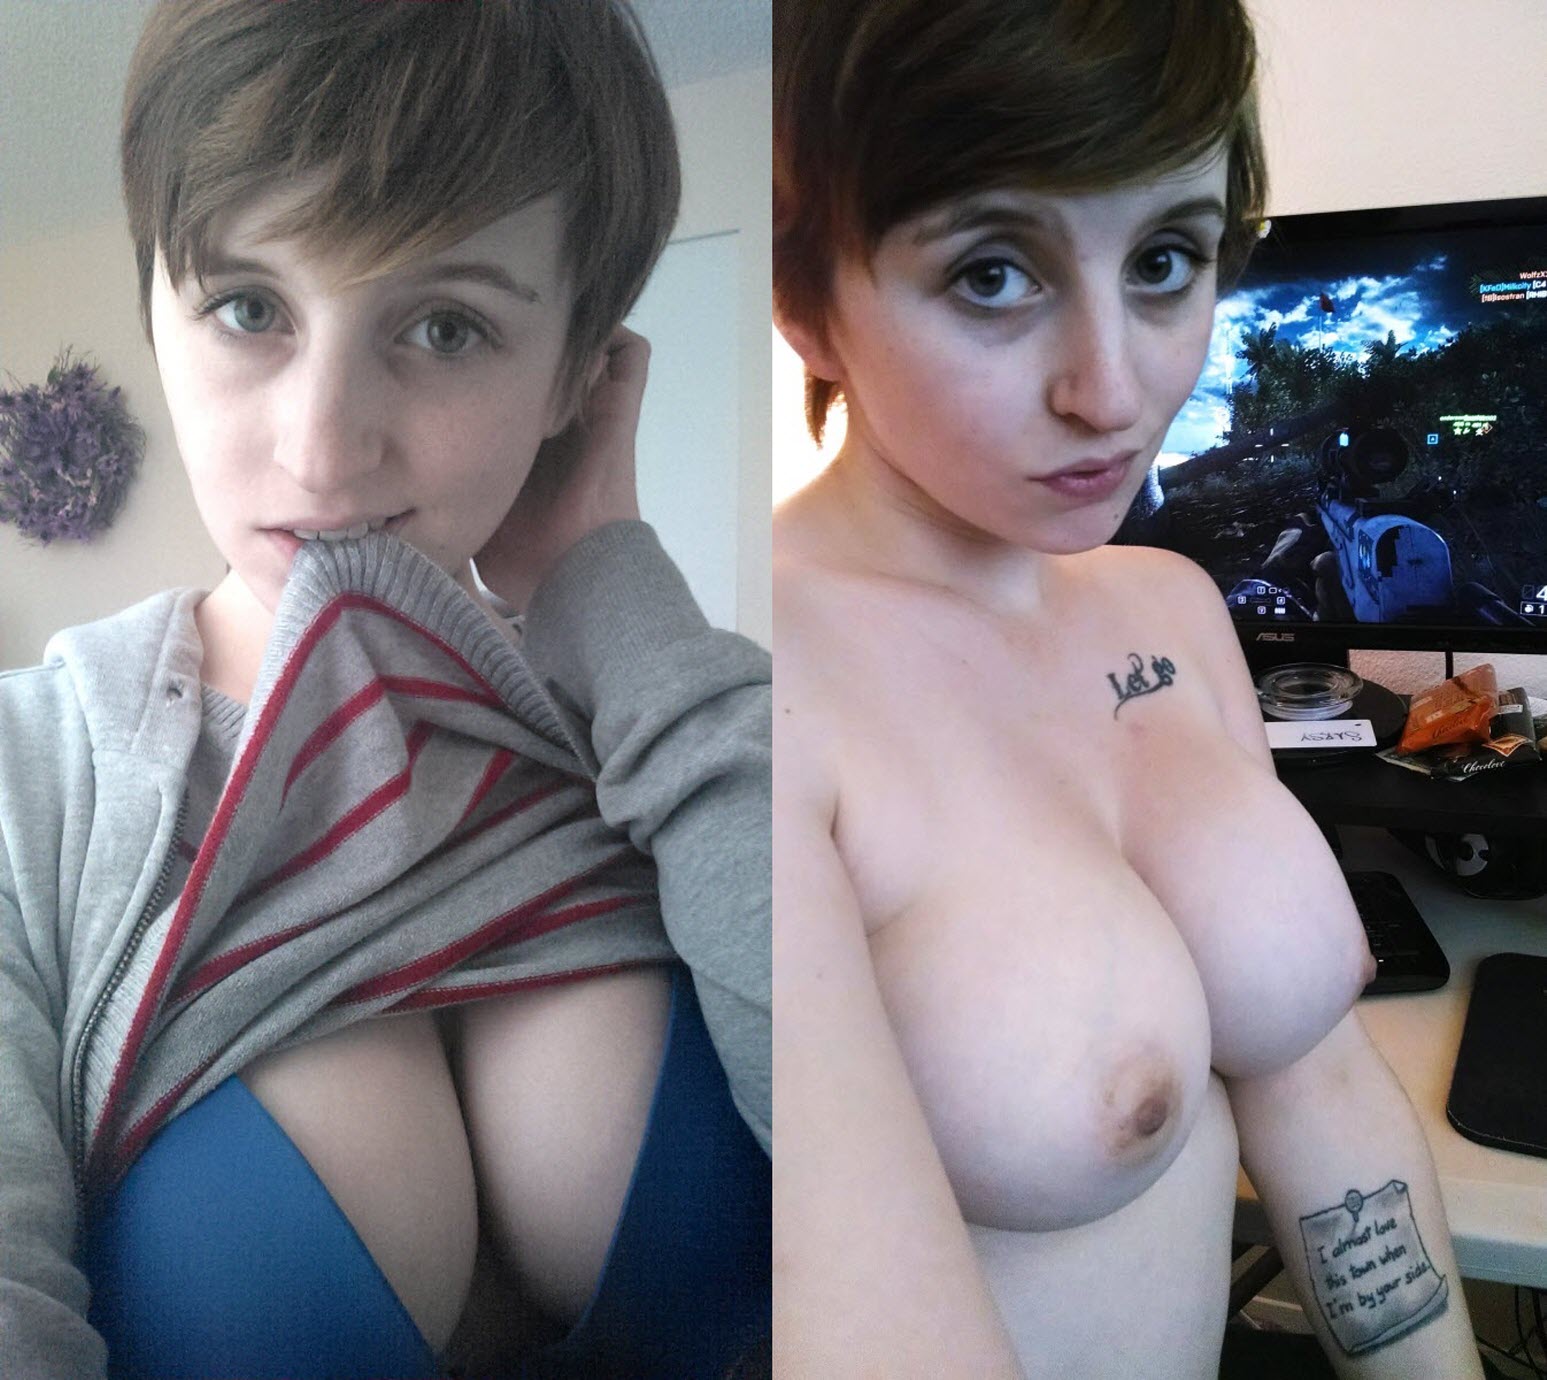 Naked female gamers